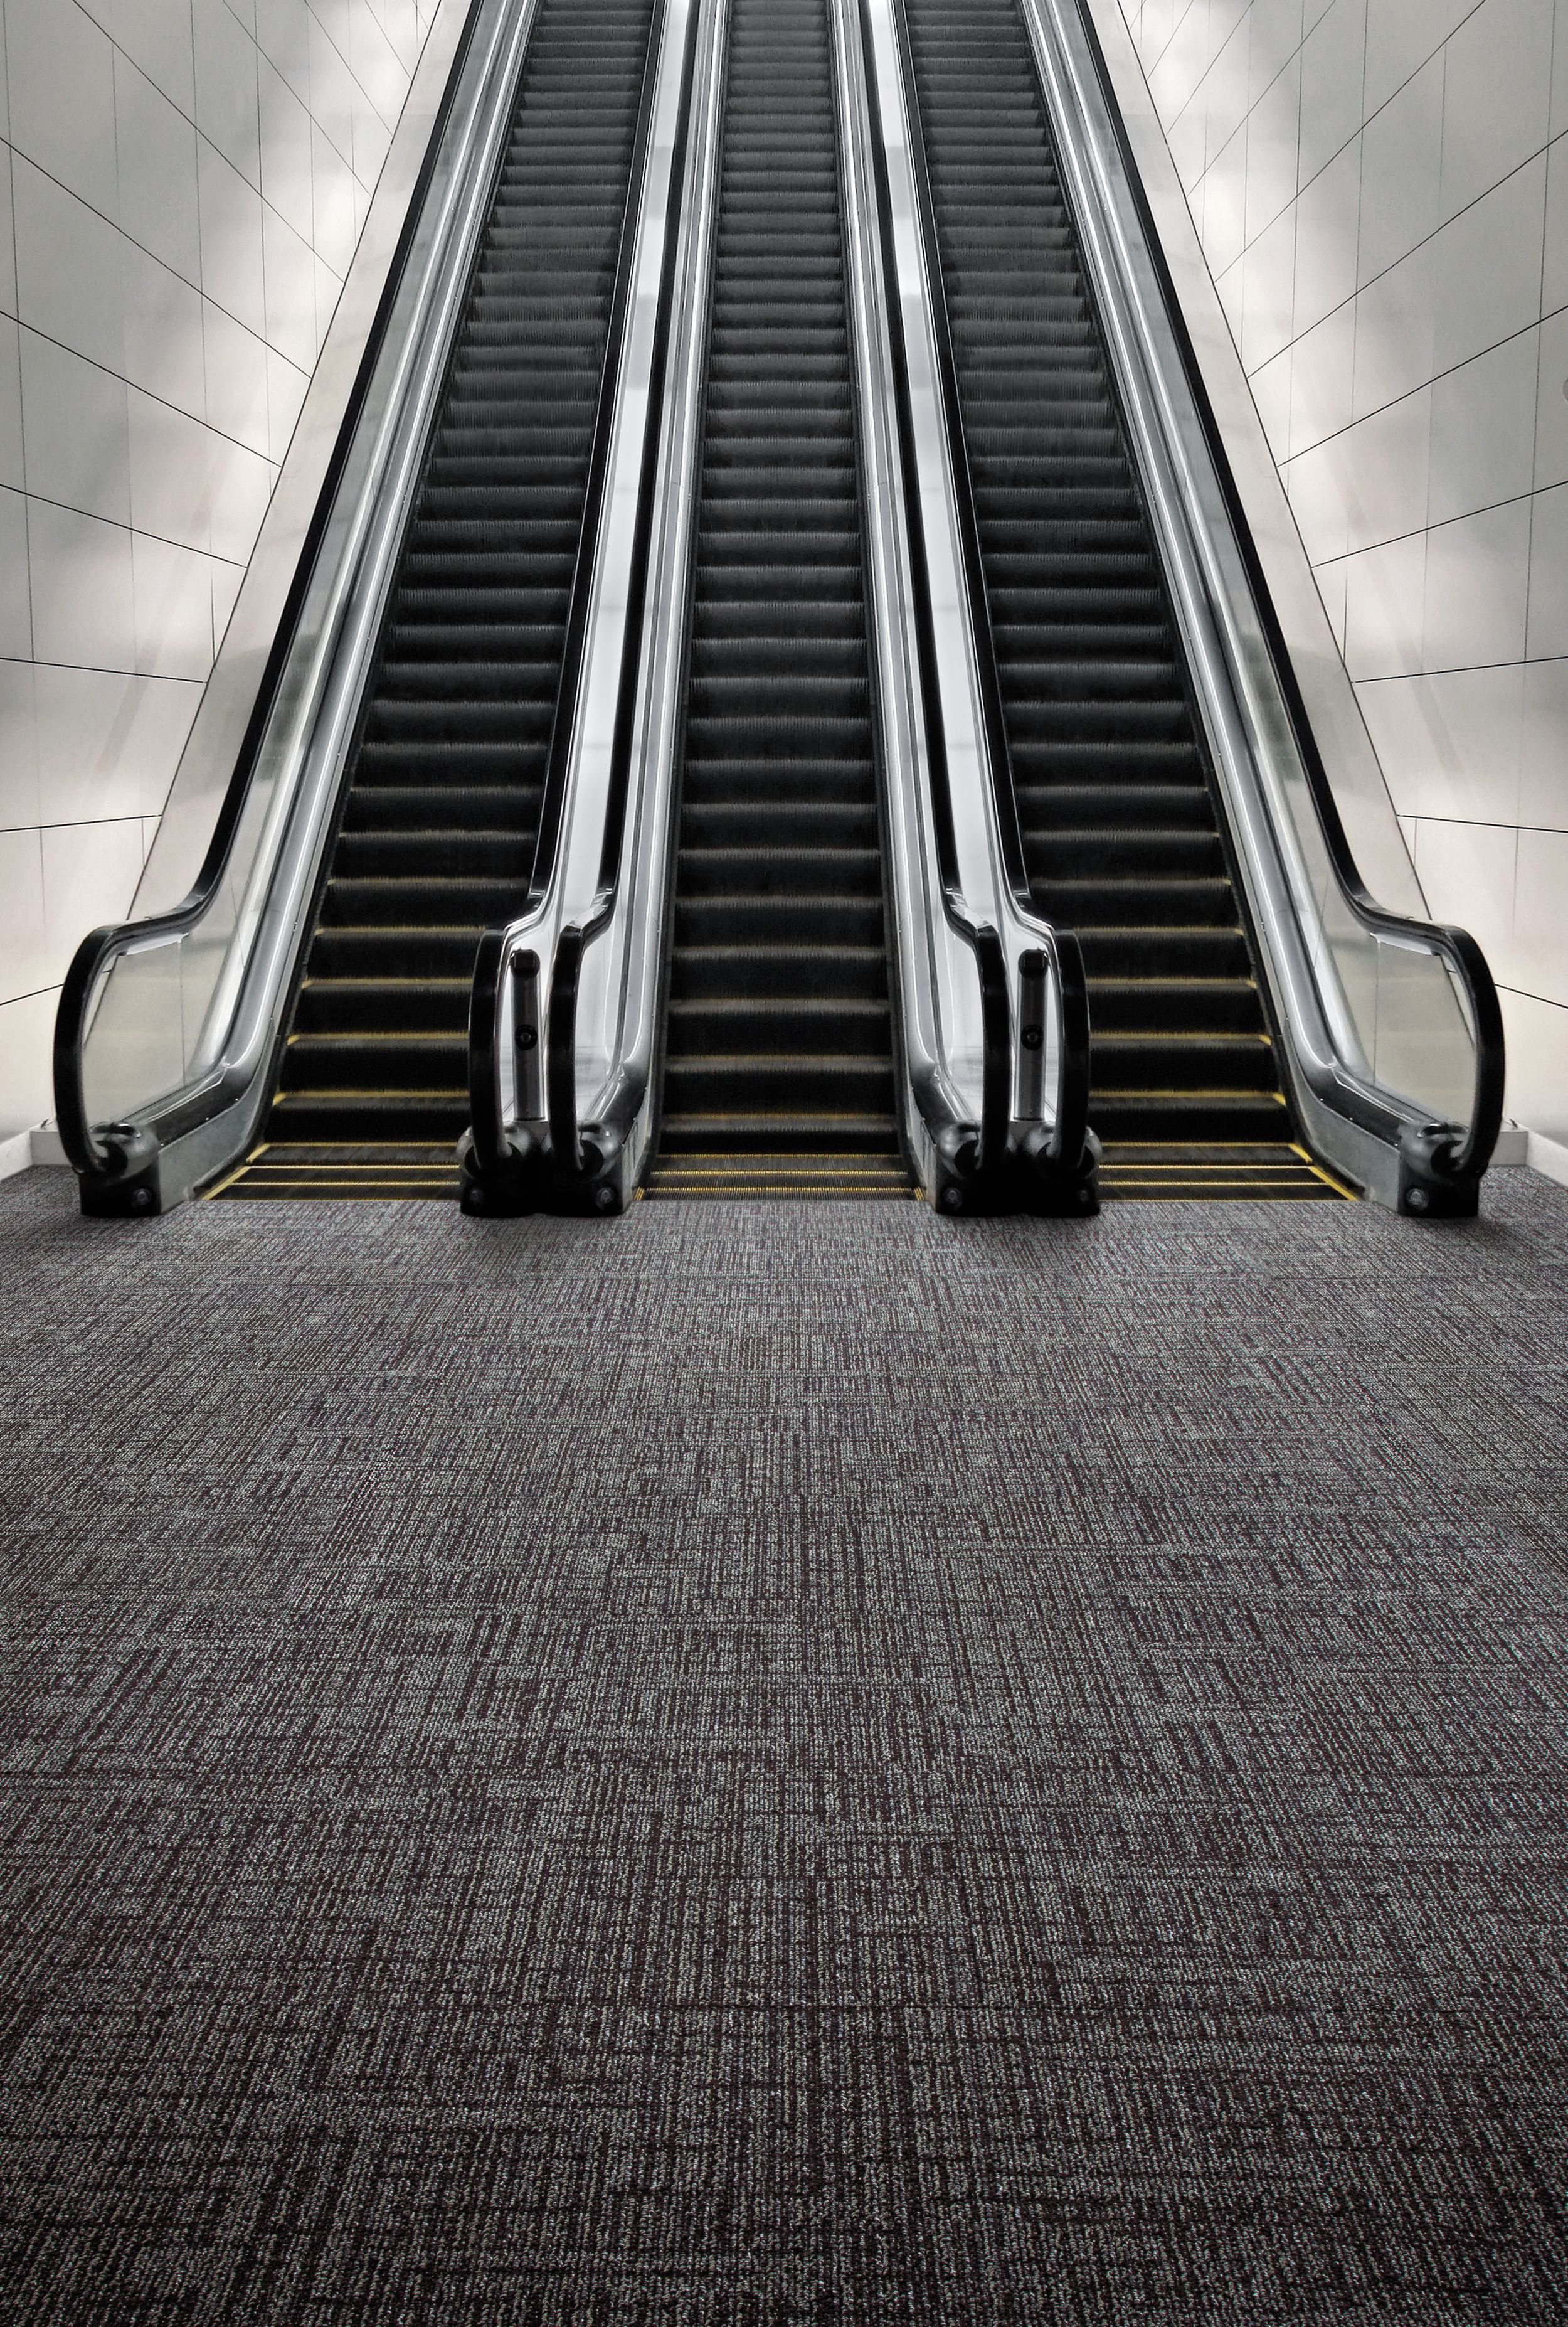 Interface SR899 carpet tile with escalator imagen número 1